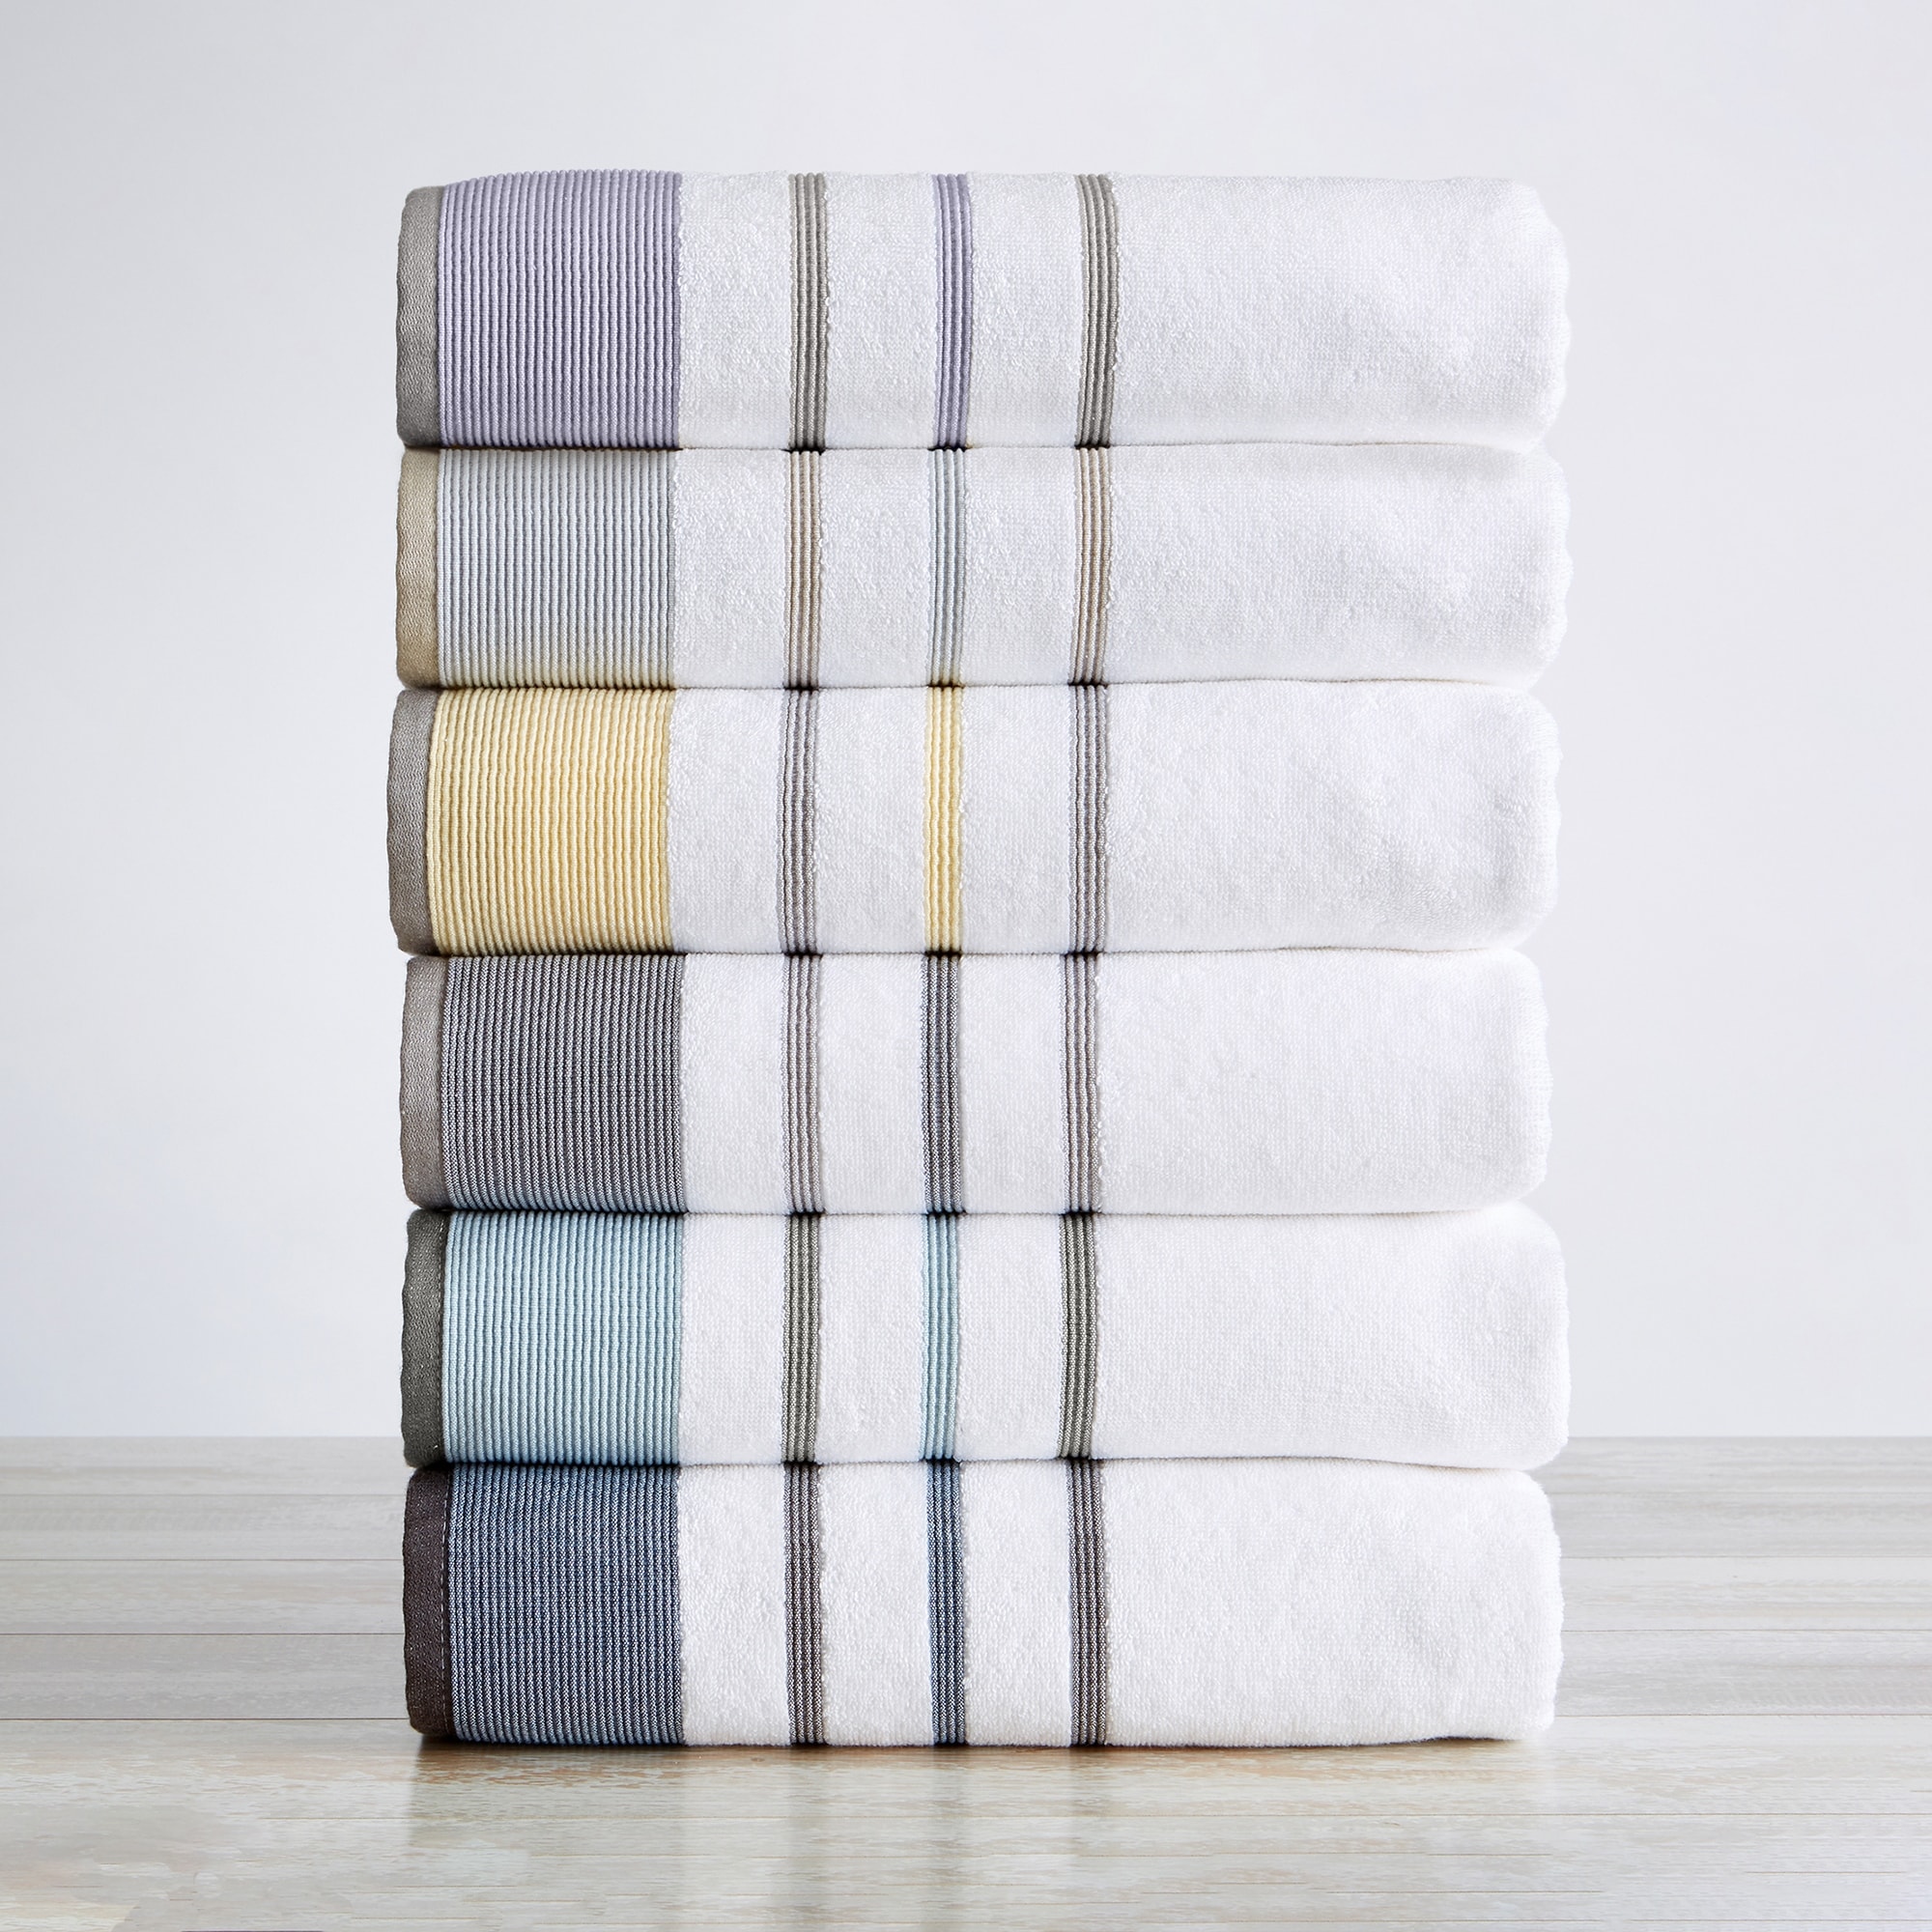 6PCS / 3PCS Cotton Towel Set Luxury Lace Embroidered Bath Towel